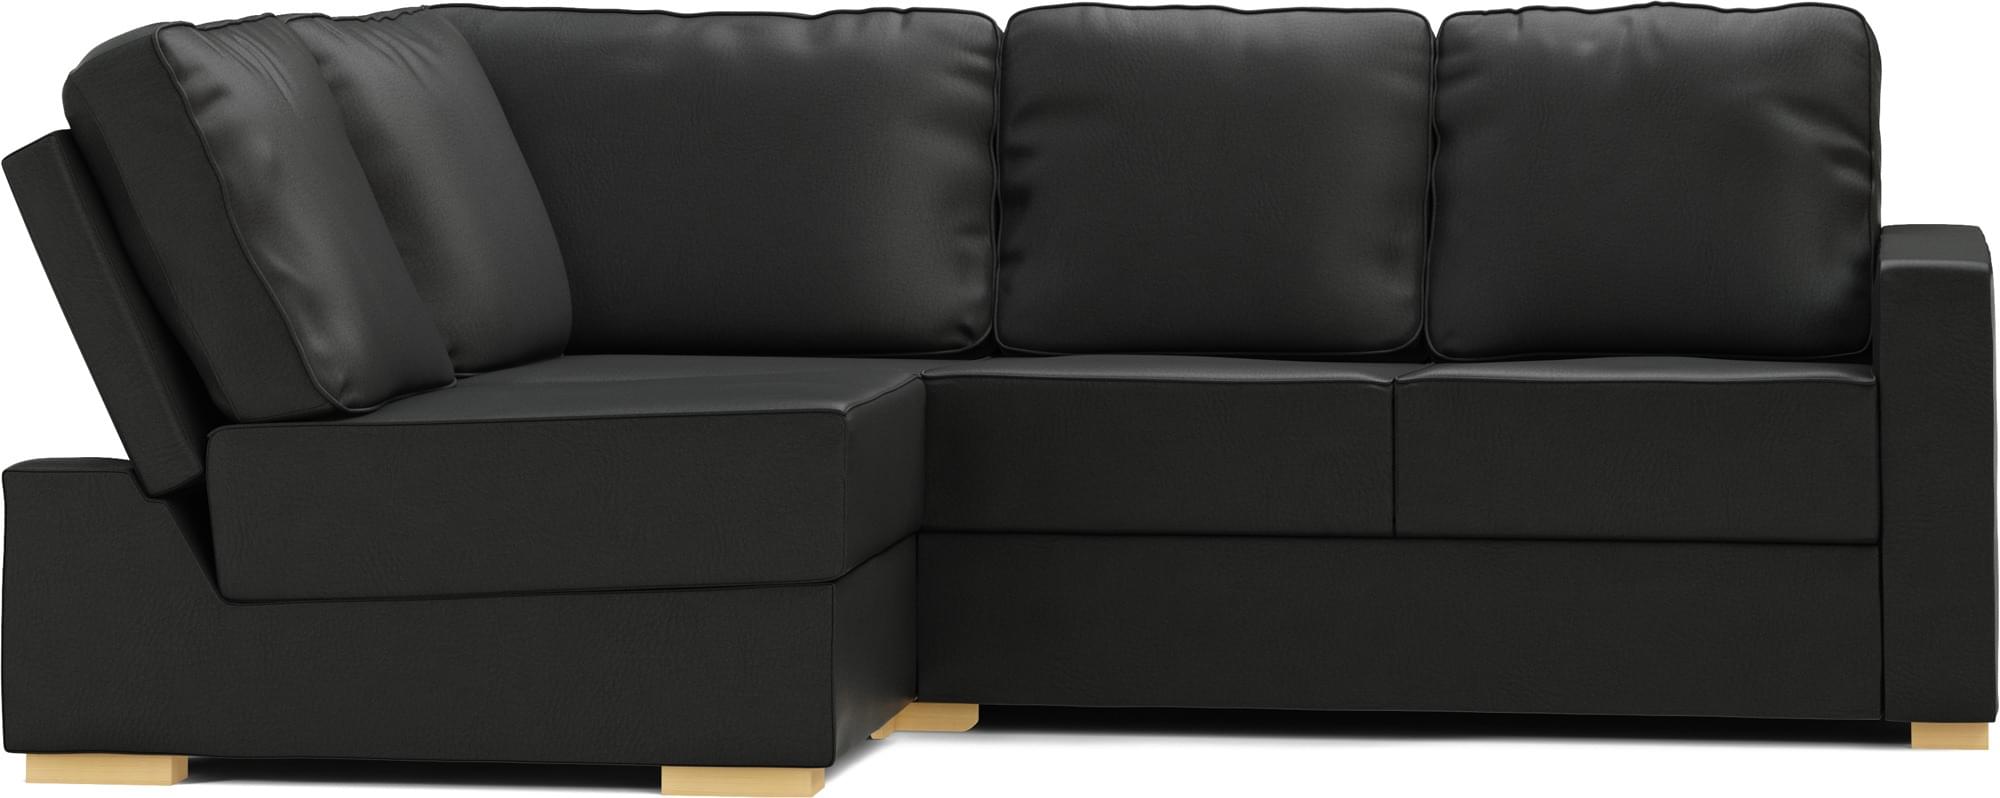 Lear Armless 3X2 Single Sofa Bed